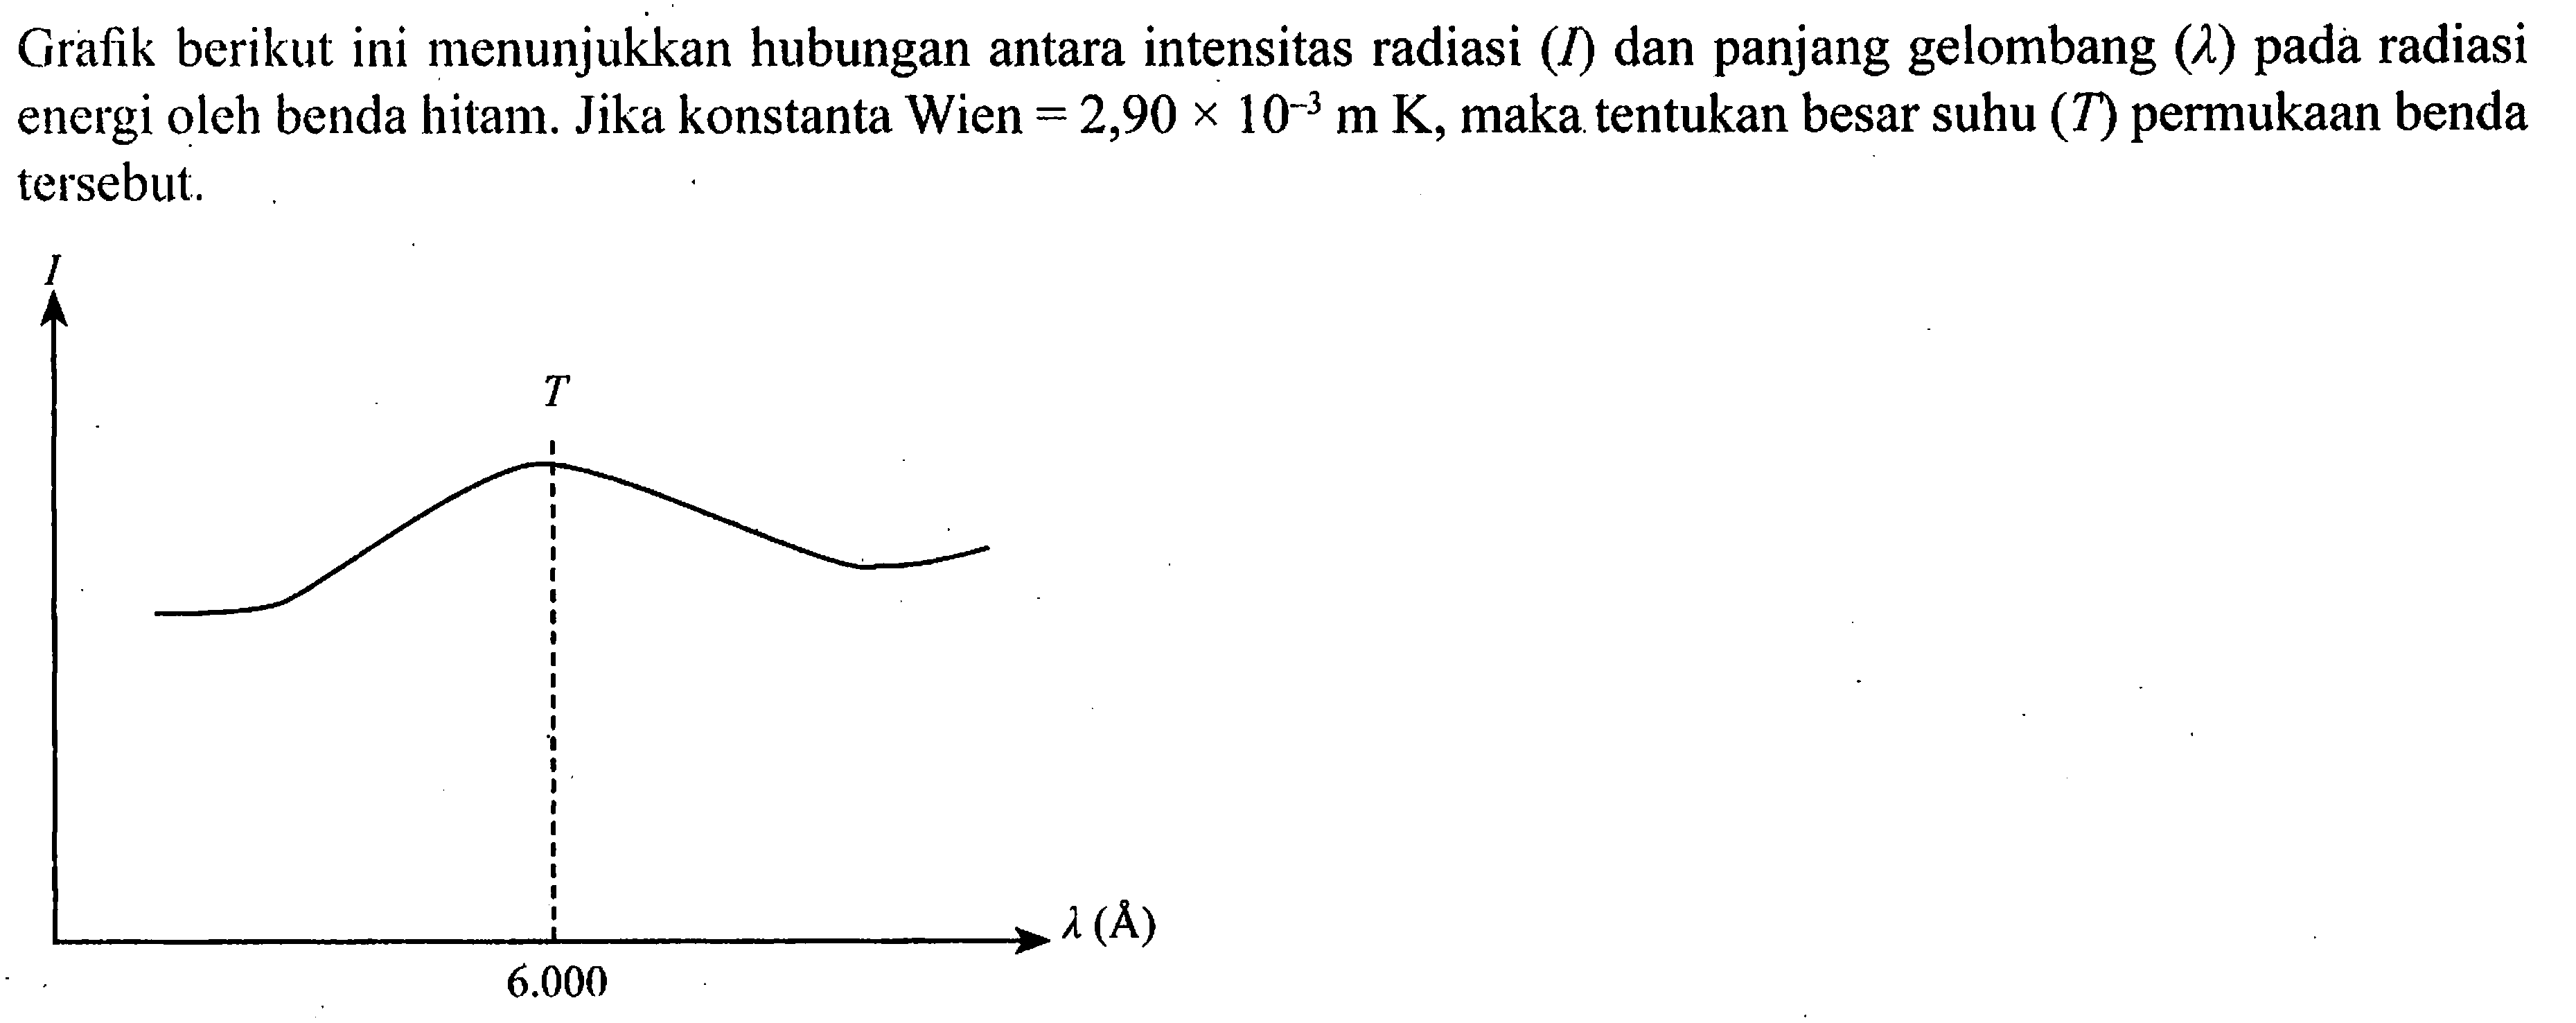 Grafik berikut ini menunjukkan hubungan antara intensitas radiasi (I) dan panjang gelombang (lambda) pada radiasi energi oleh benda hitam. Jika konstanta Wien = 2,90 x 10^(-3) m K, maka tentukan besar suhu (T) permukaan benda tersebut.Lamda (A), 6000, I